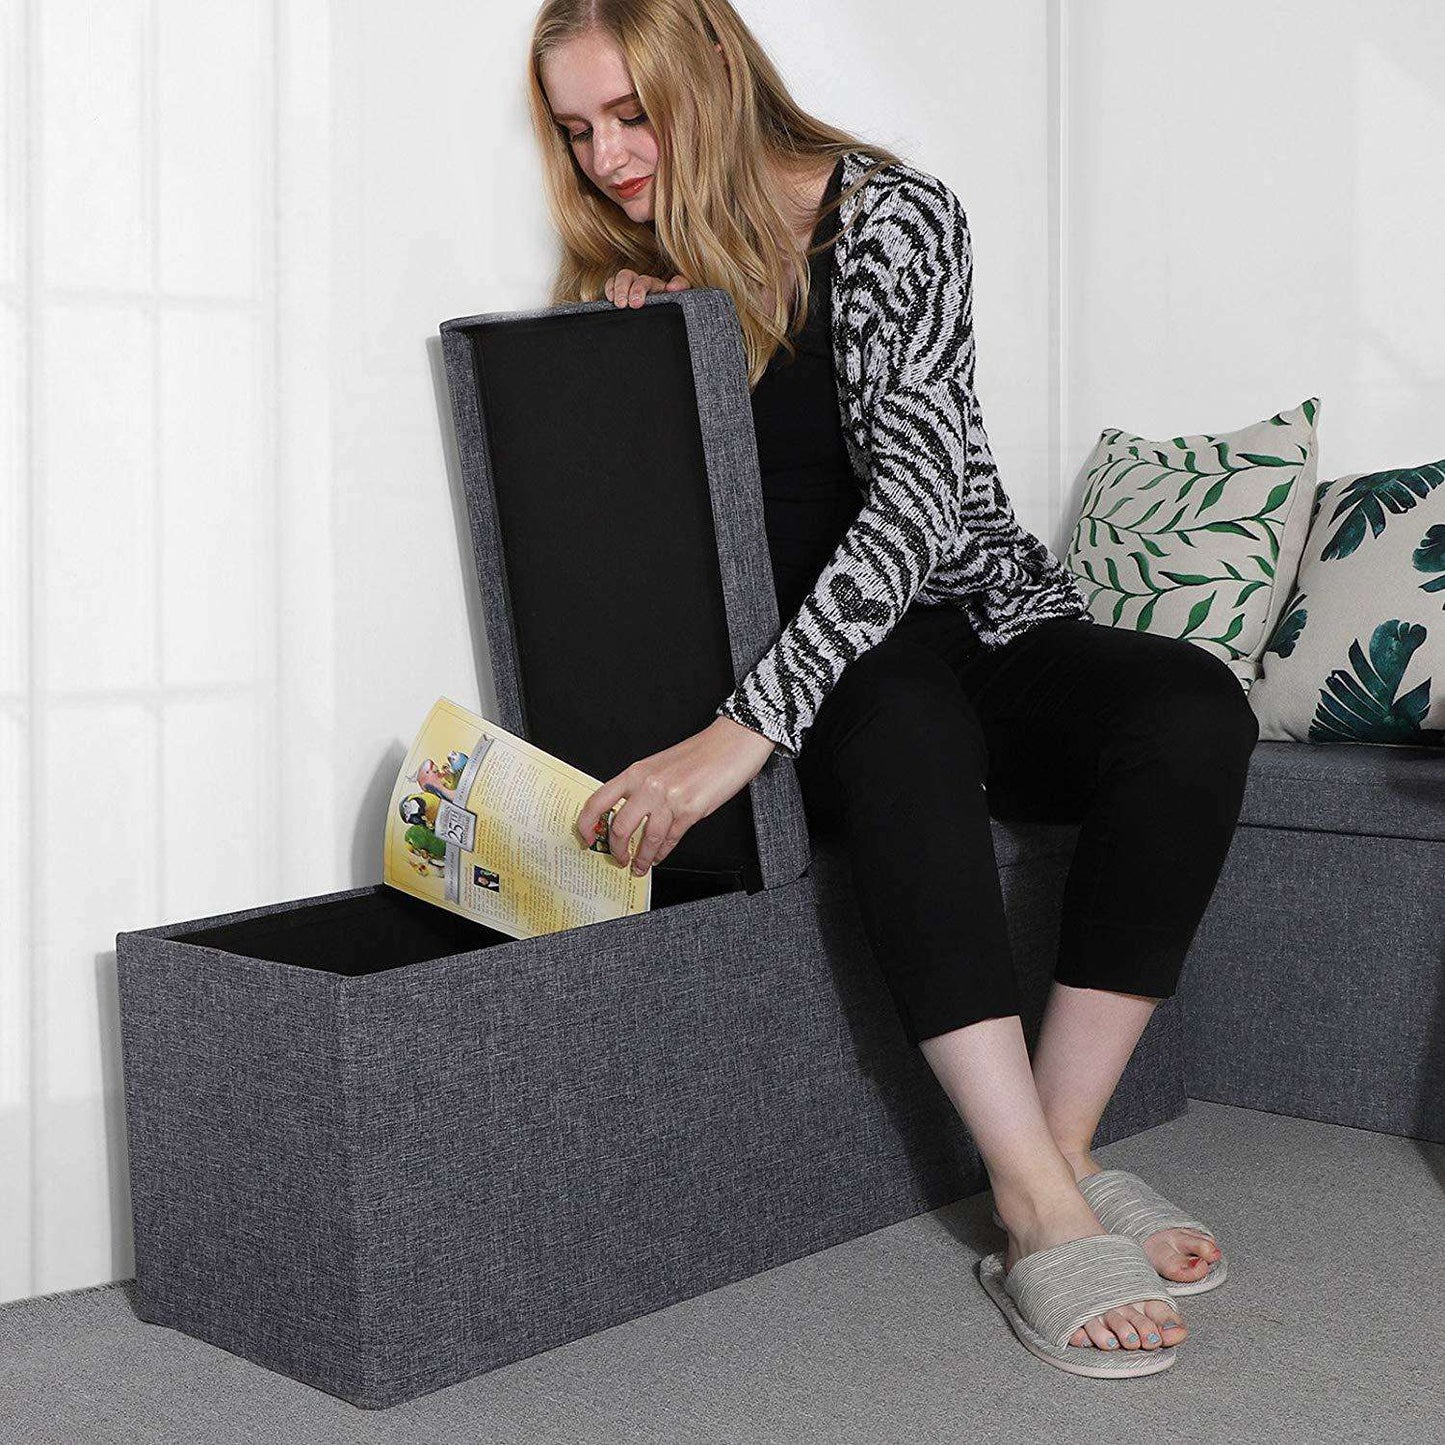 Nancy's Hocker Linen - Storage Bench - Footstools With Storage Space - Bench With Storage - Gray - 110 x 38 x 38 cm